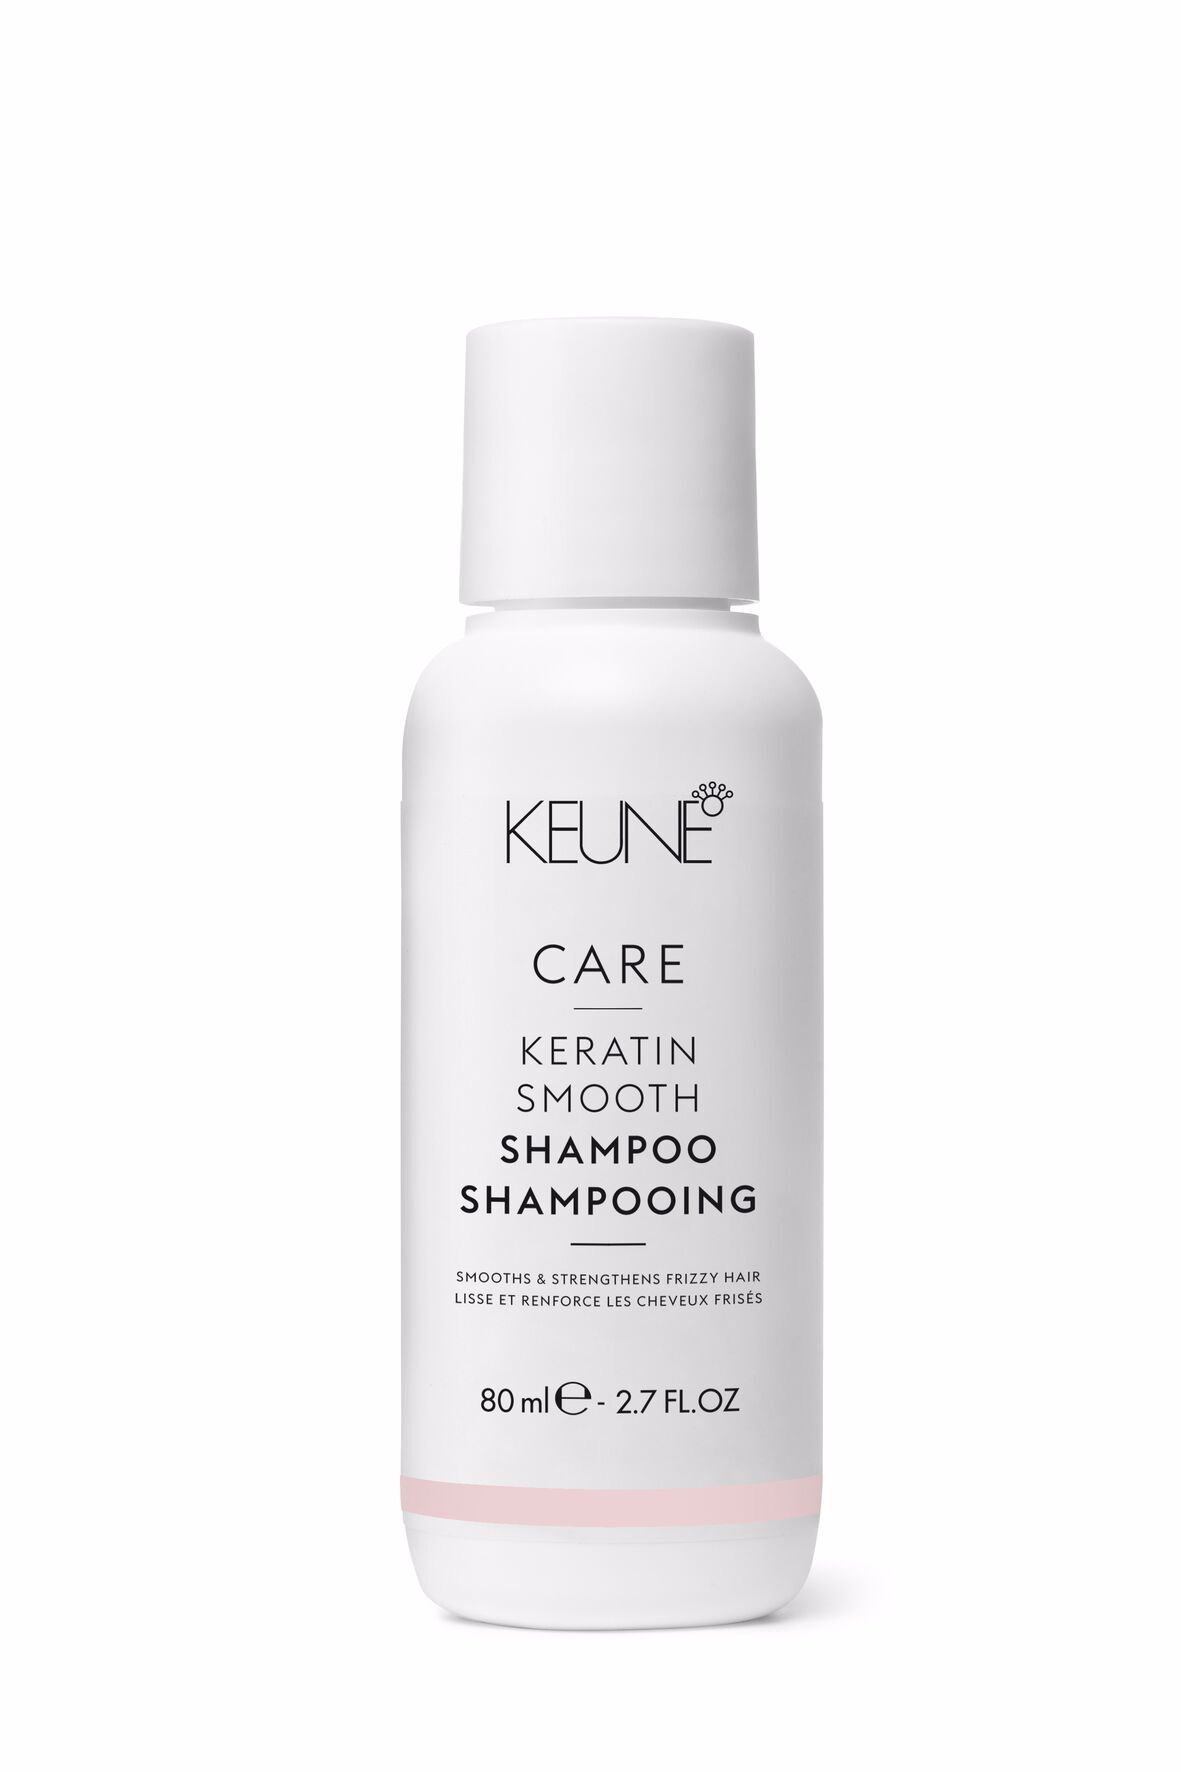 Erleben Sie geschmeidiges, frizzfreies Haar dank Keratin Smooth Shampoo. Diese Haarpflege pflegt, spendet Feuchtigkeit und stärkt trockenes Haar. Entdecken Sie die Vorteile von Keratin. Auf keune.ch.